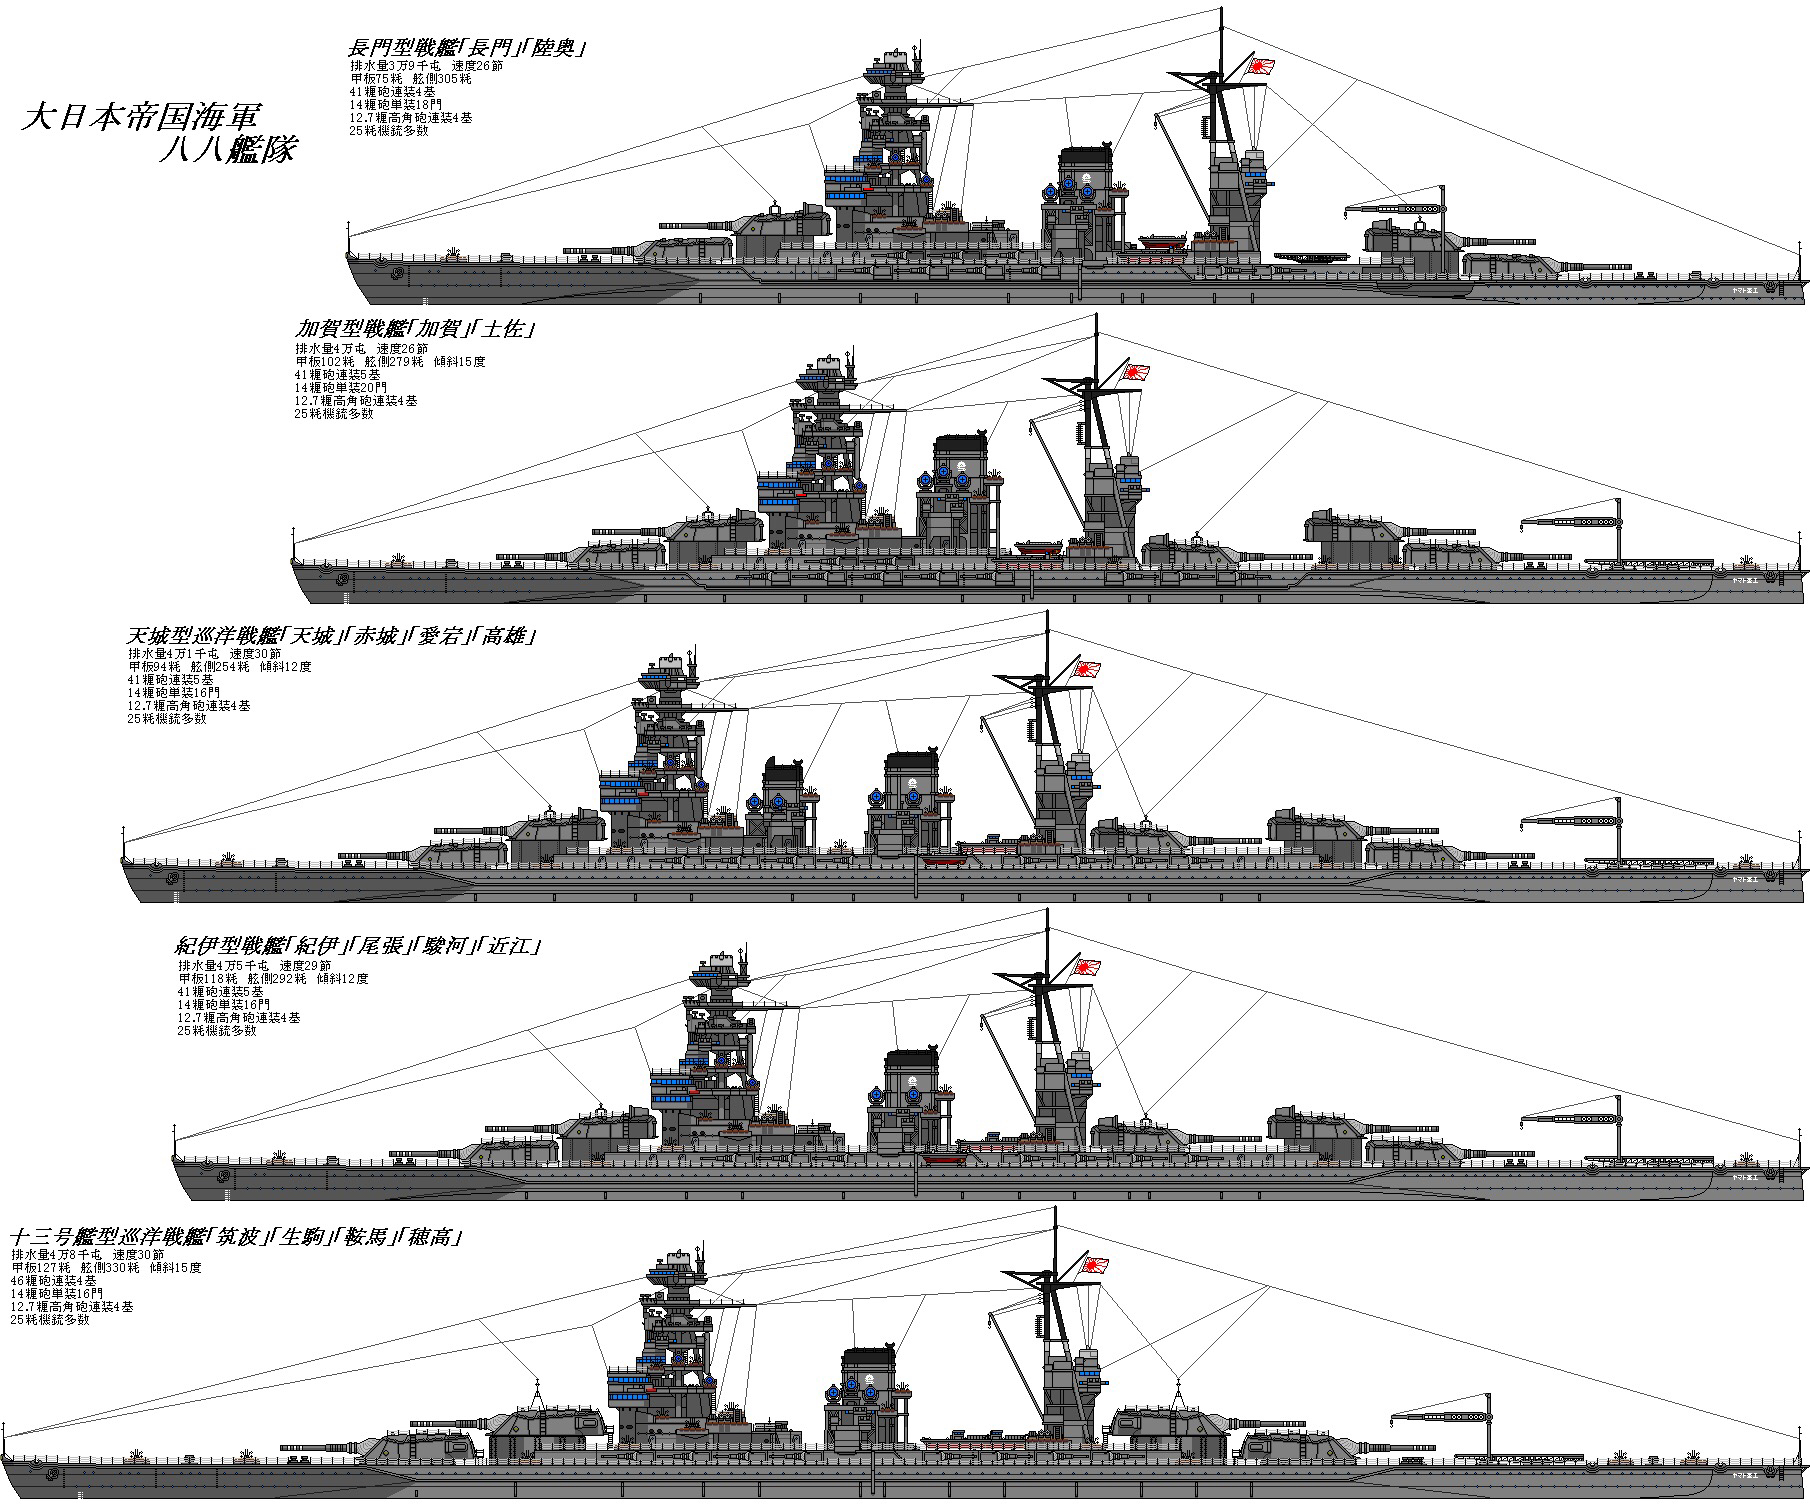 [wows口嗨] 脑补者日志——10级日本战列舰——近江